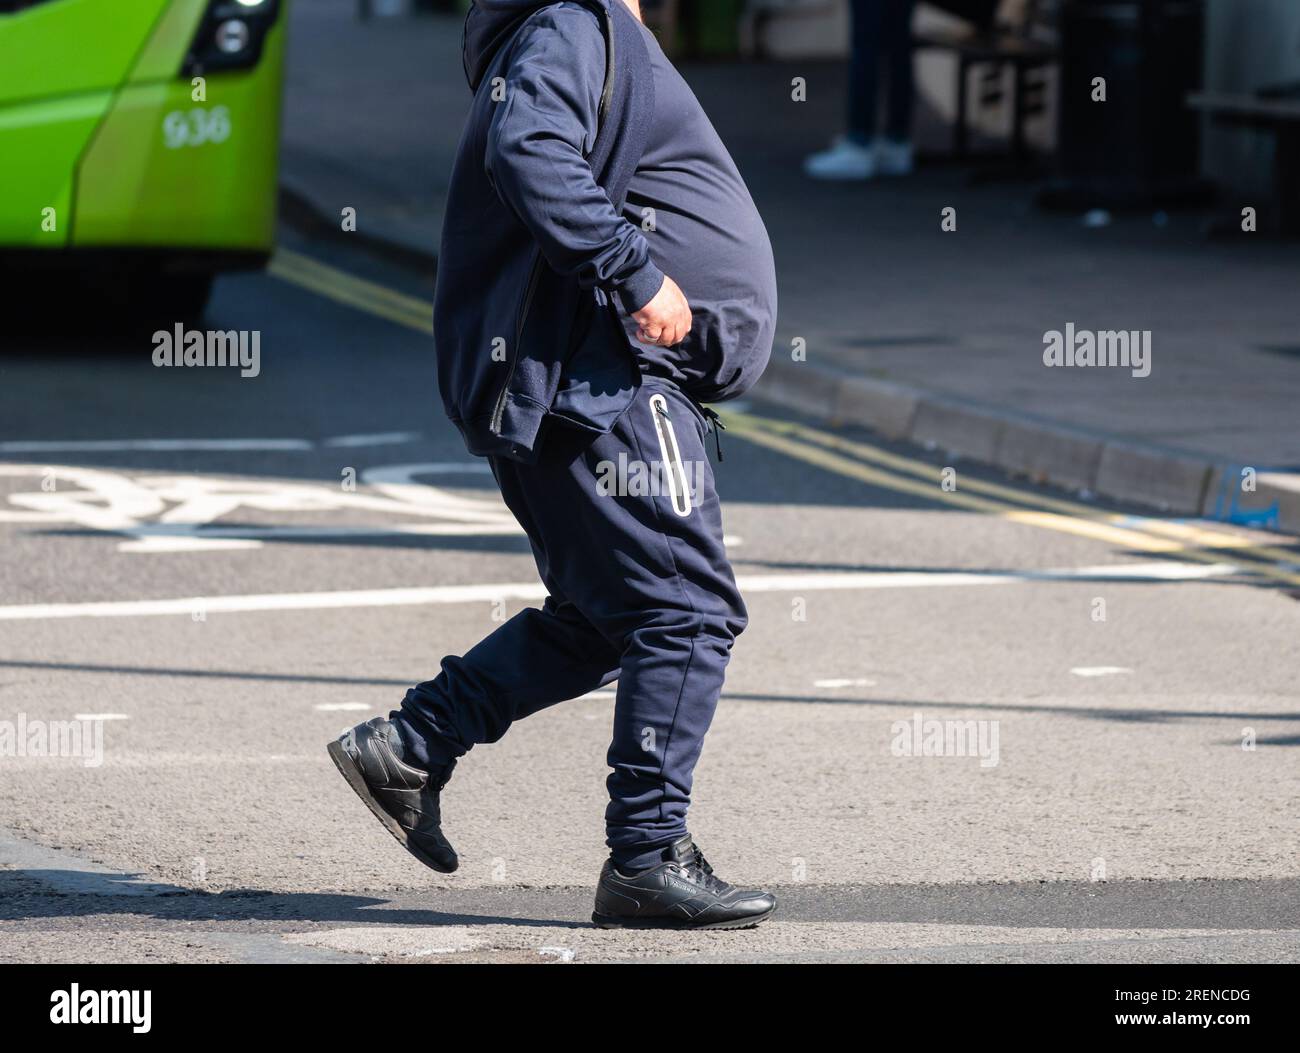 Uomo in sovrappeso con pancia grande o pancia grande, senza mostrare la testa, camminando attraverso una strada, Regno Unito. Uomo obeso. Foto Stock